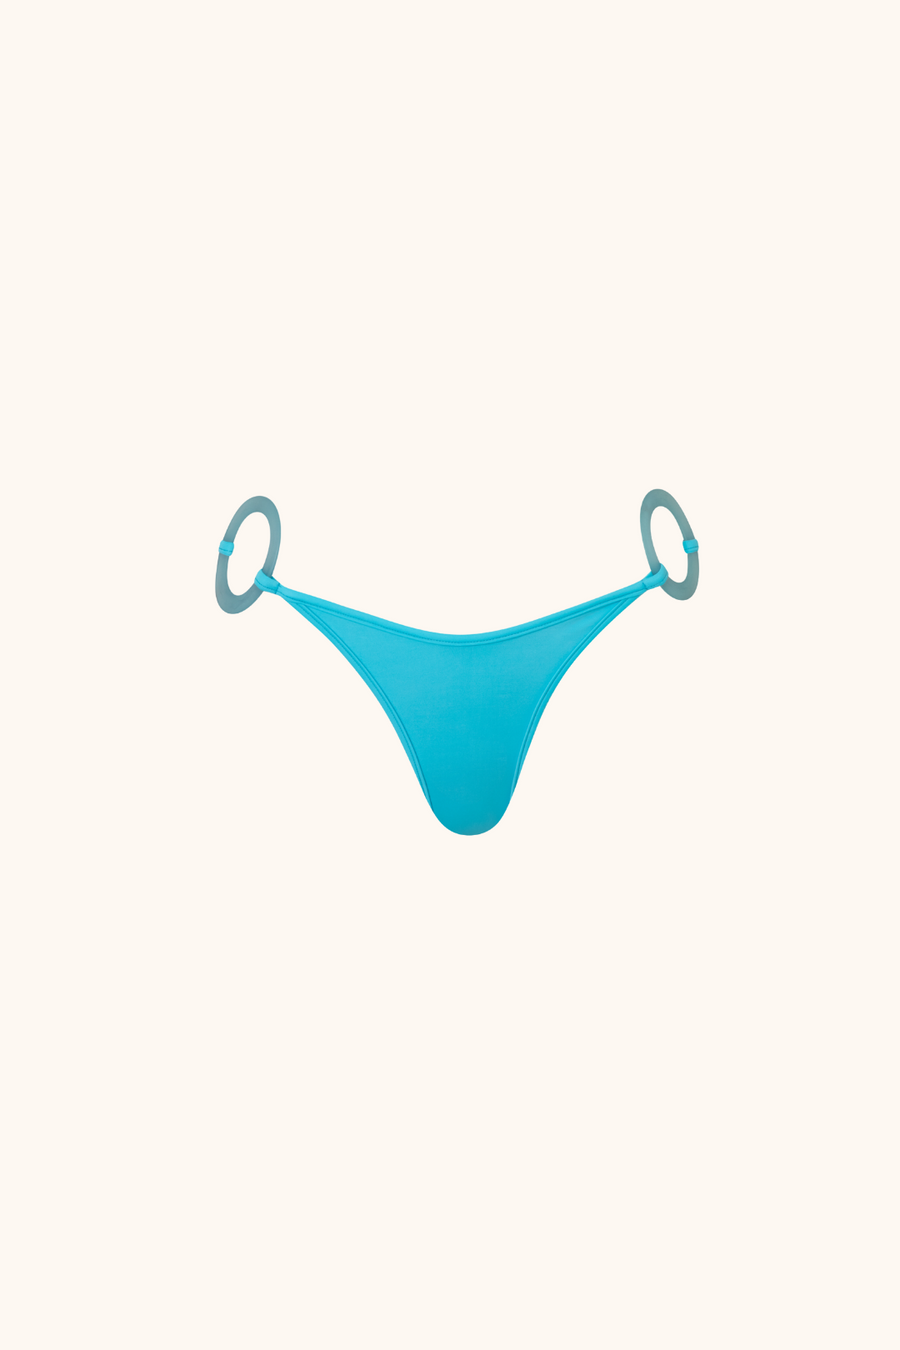 'Sky Blue' Bikini Bottom